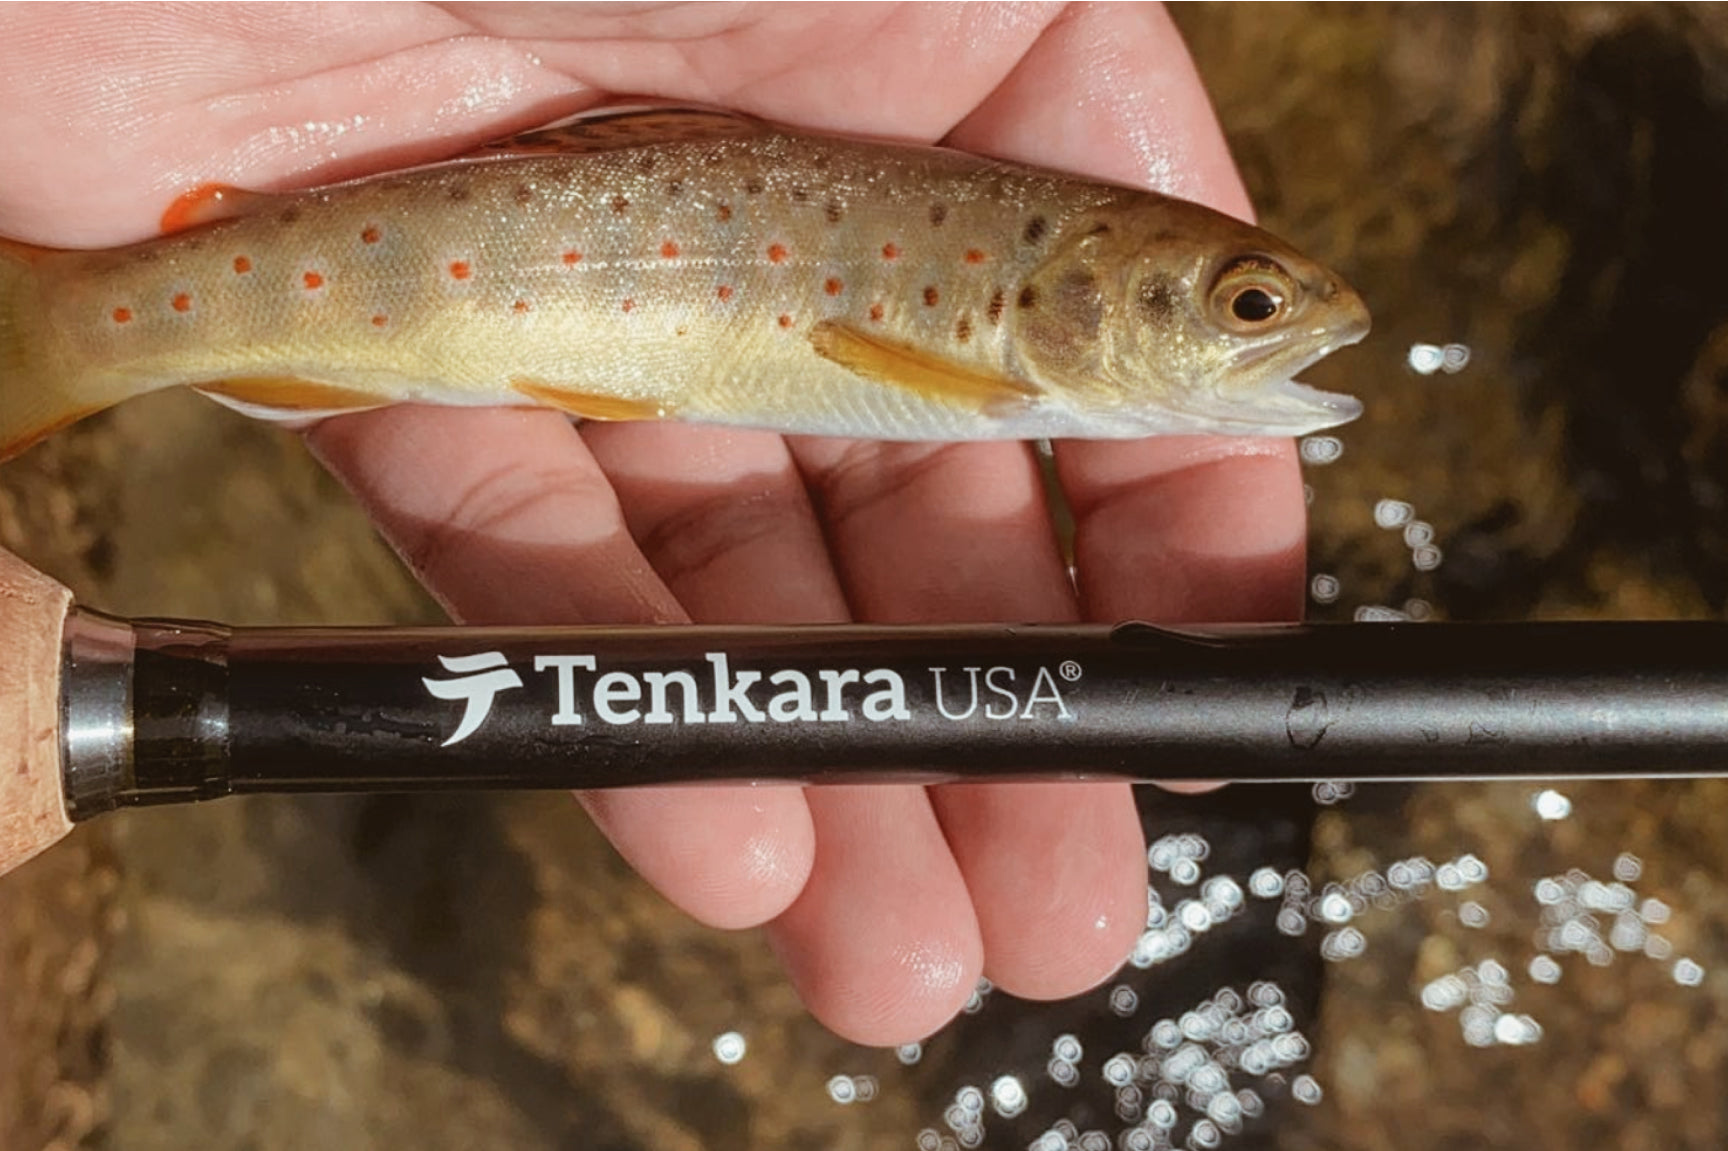 Tenkara Usa Amago Rod and fish on hand.